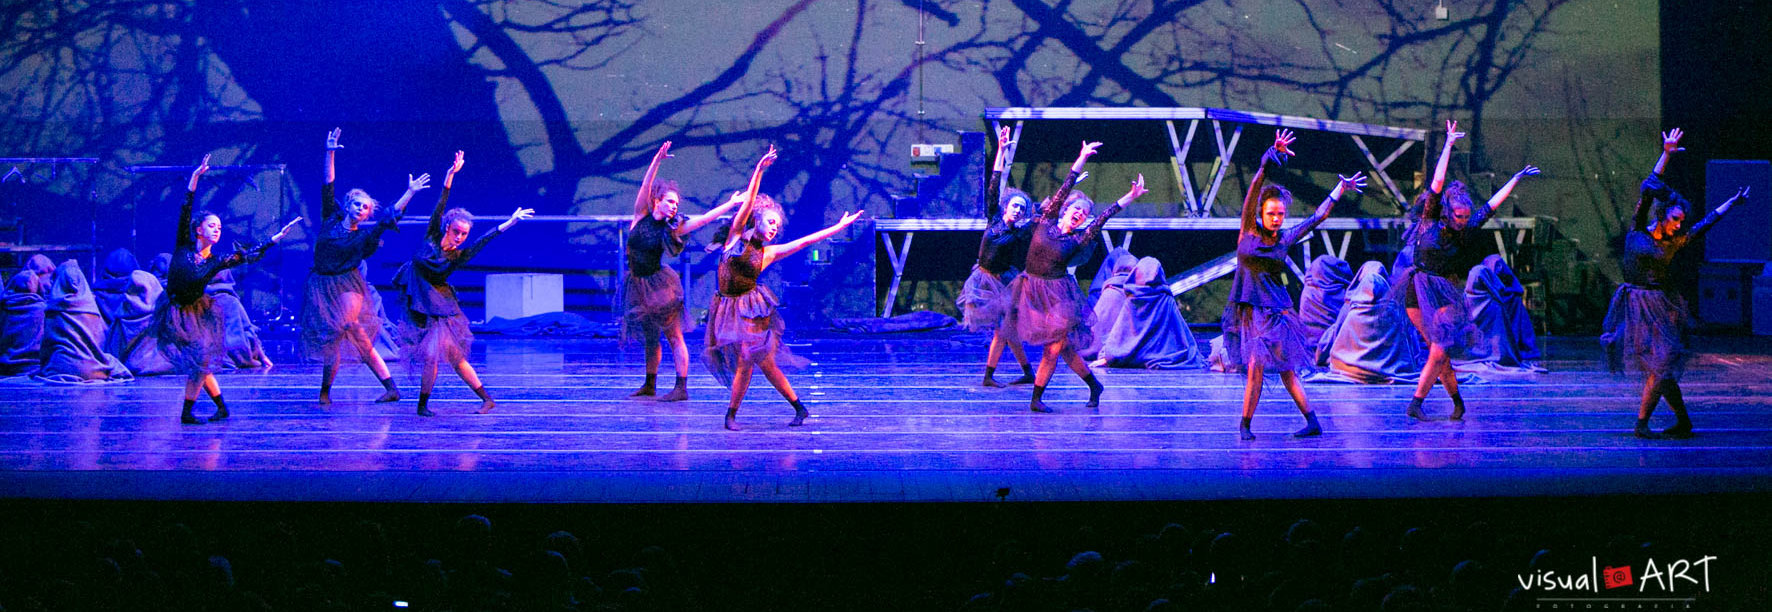 un gruppo di danzatrici vestite da streghe